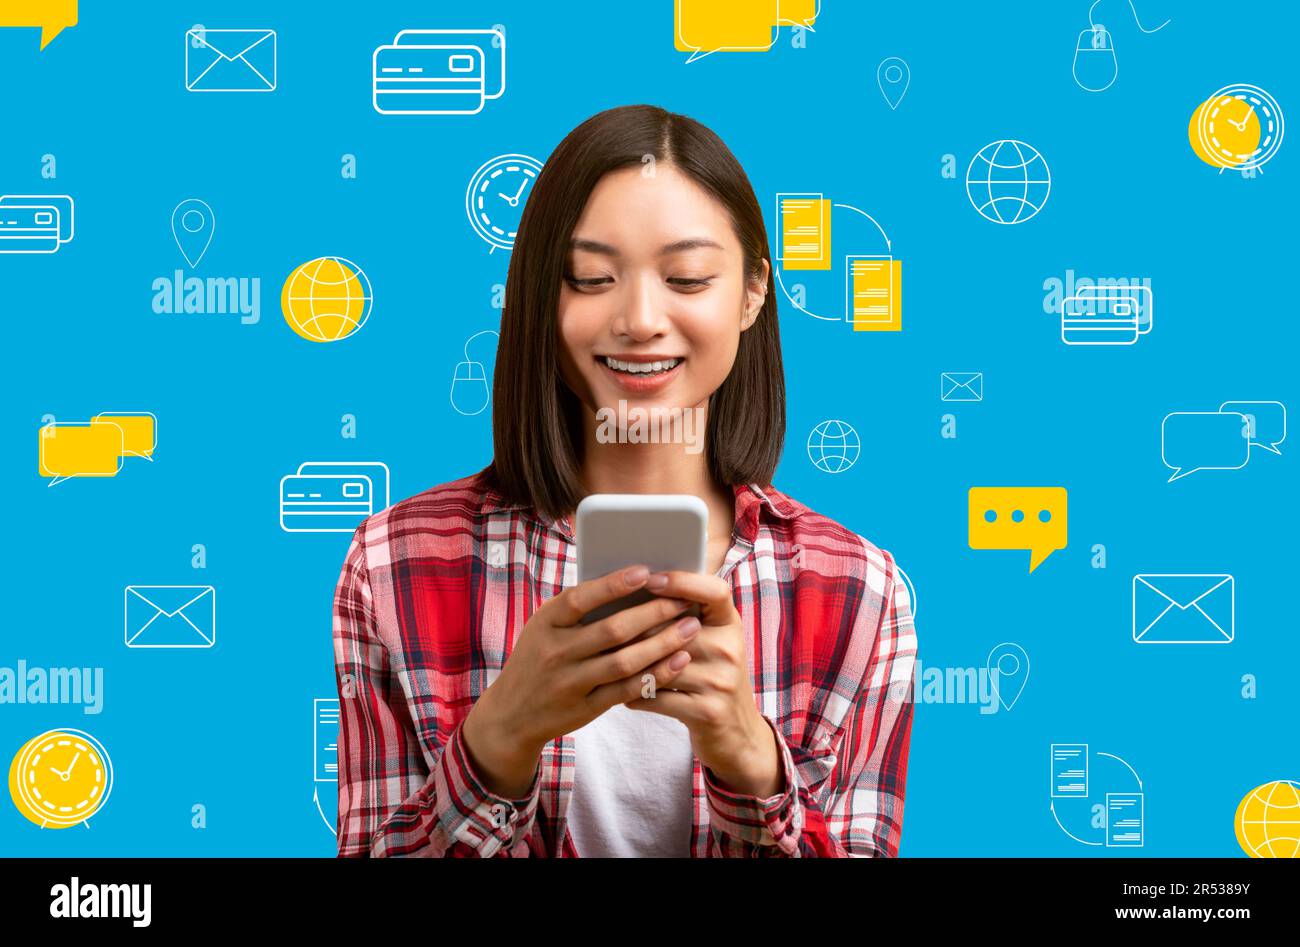 Femme asiatique souriante avec un téléphone au-dessus de diverses icônes du monde numérique Banque D'Images